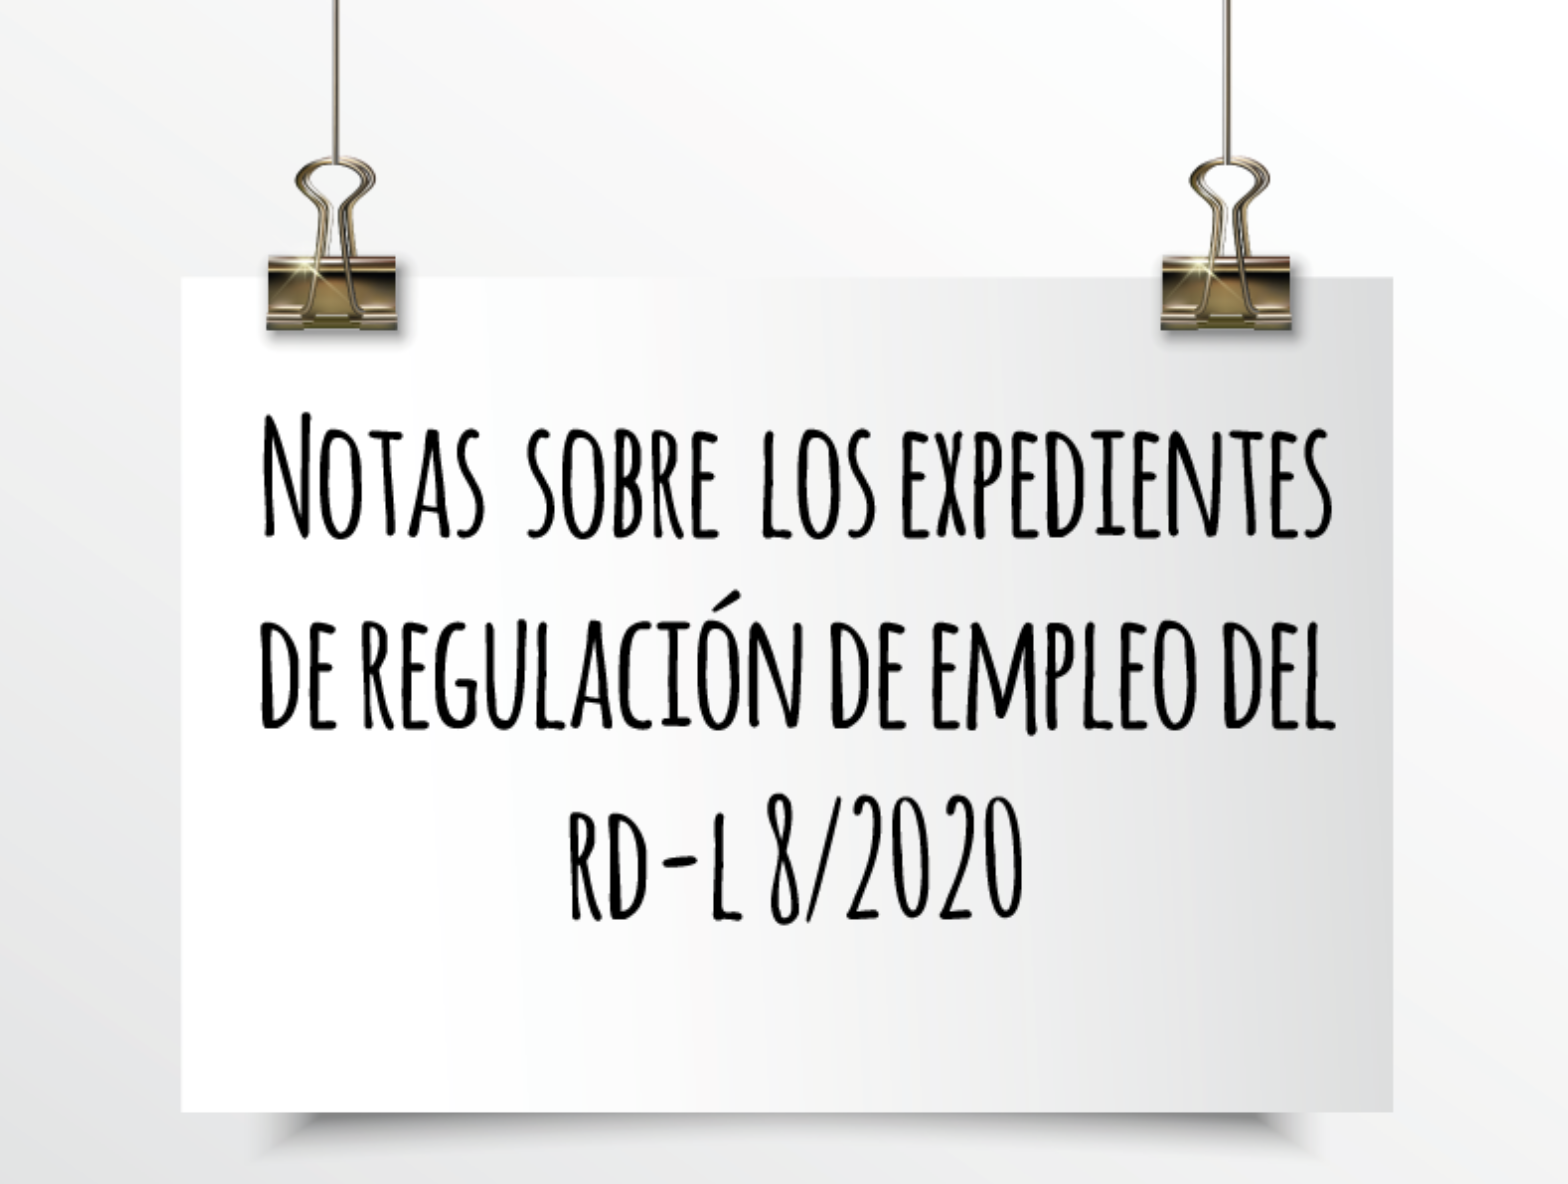 EMEDE ETL Global: Notas sobre los Expedientes de Regulación de Empleo del RD-l8/2020